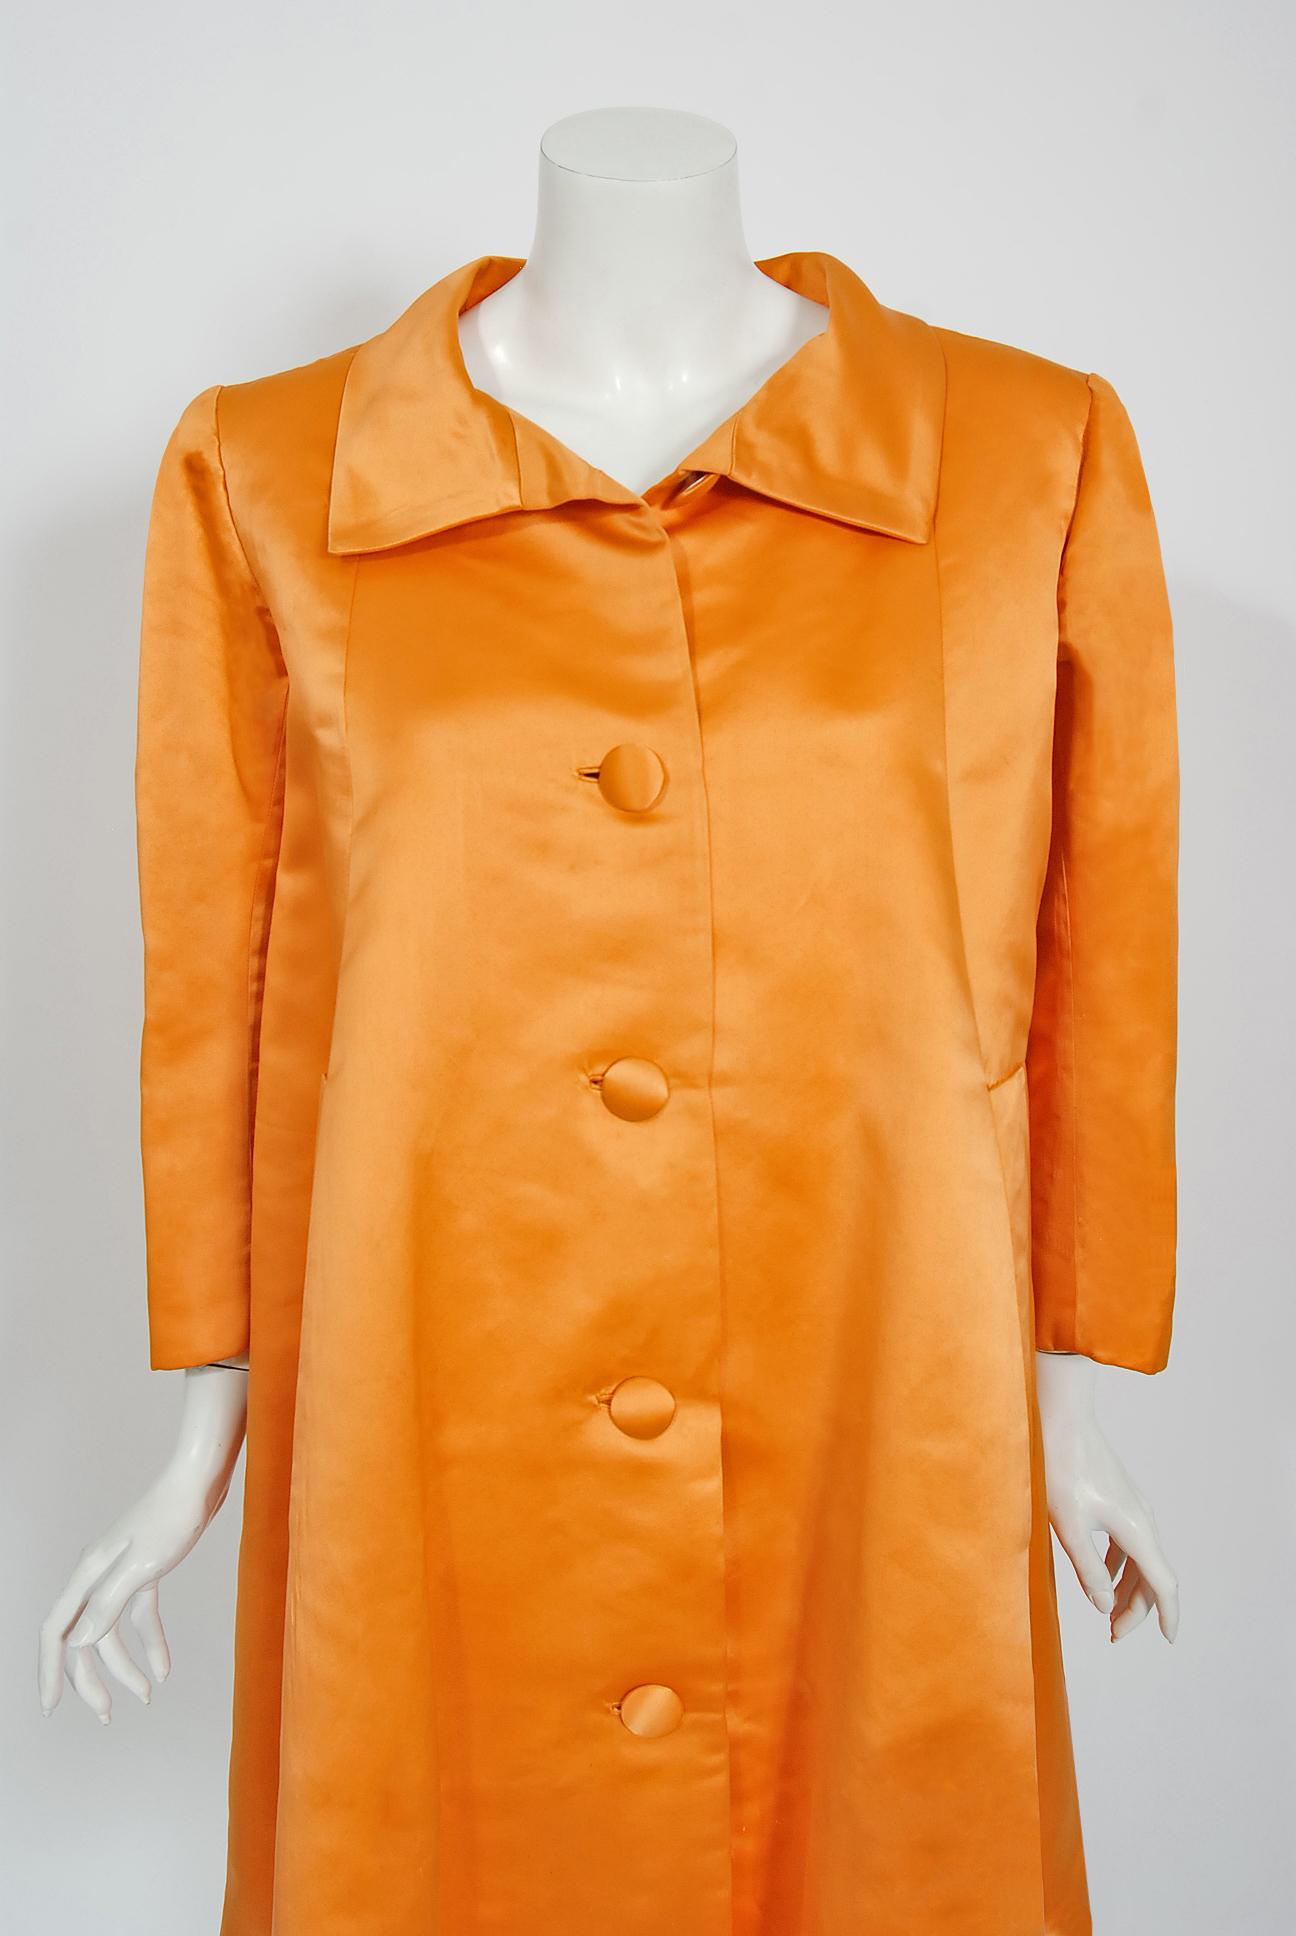 Atemberaubender Balenciaga Haute Couture Mantel aus orangefarbenem Herzogin-Satin aus seiner Kollektion von 1958. Cristobal Balenciaga begann sein Lebenswerk in der Modebranche in sehr jungen Jahren. Es wird erzählt, dass die Marquesa de Casa